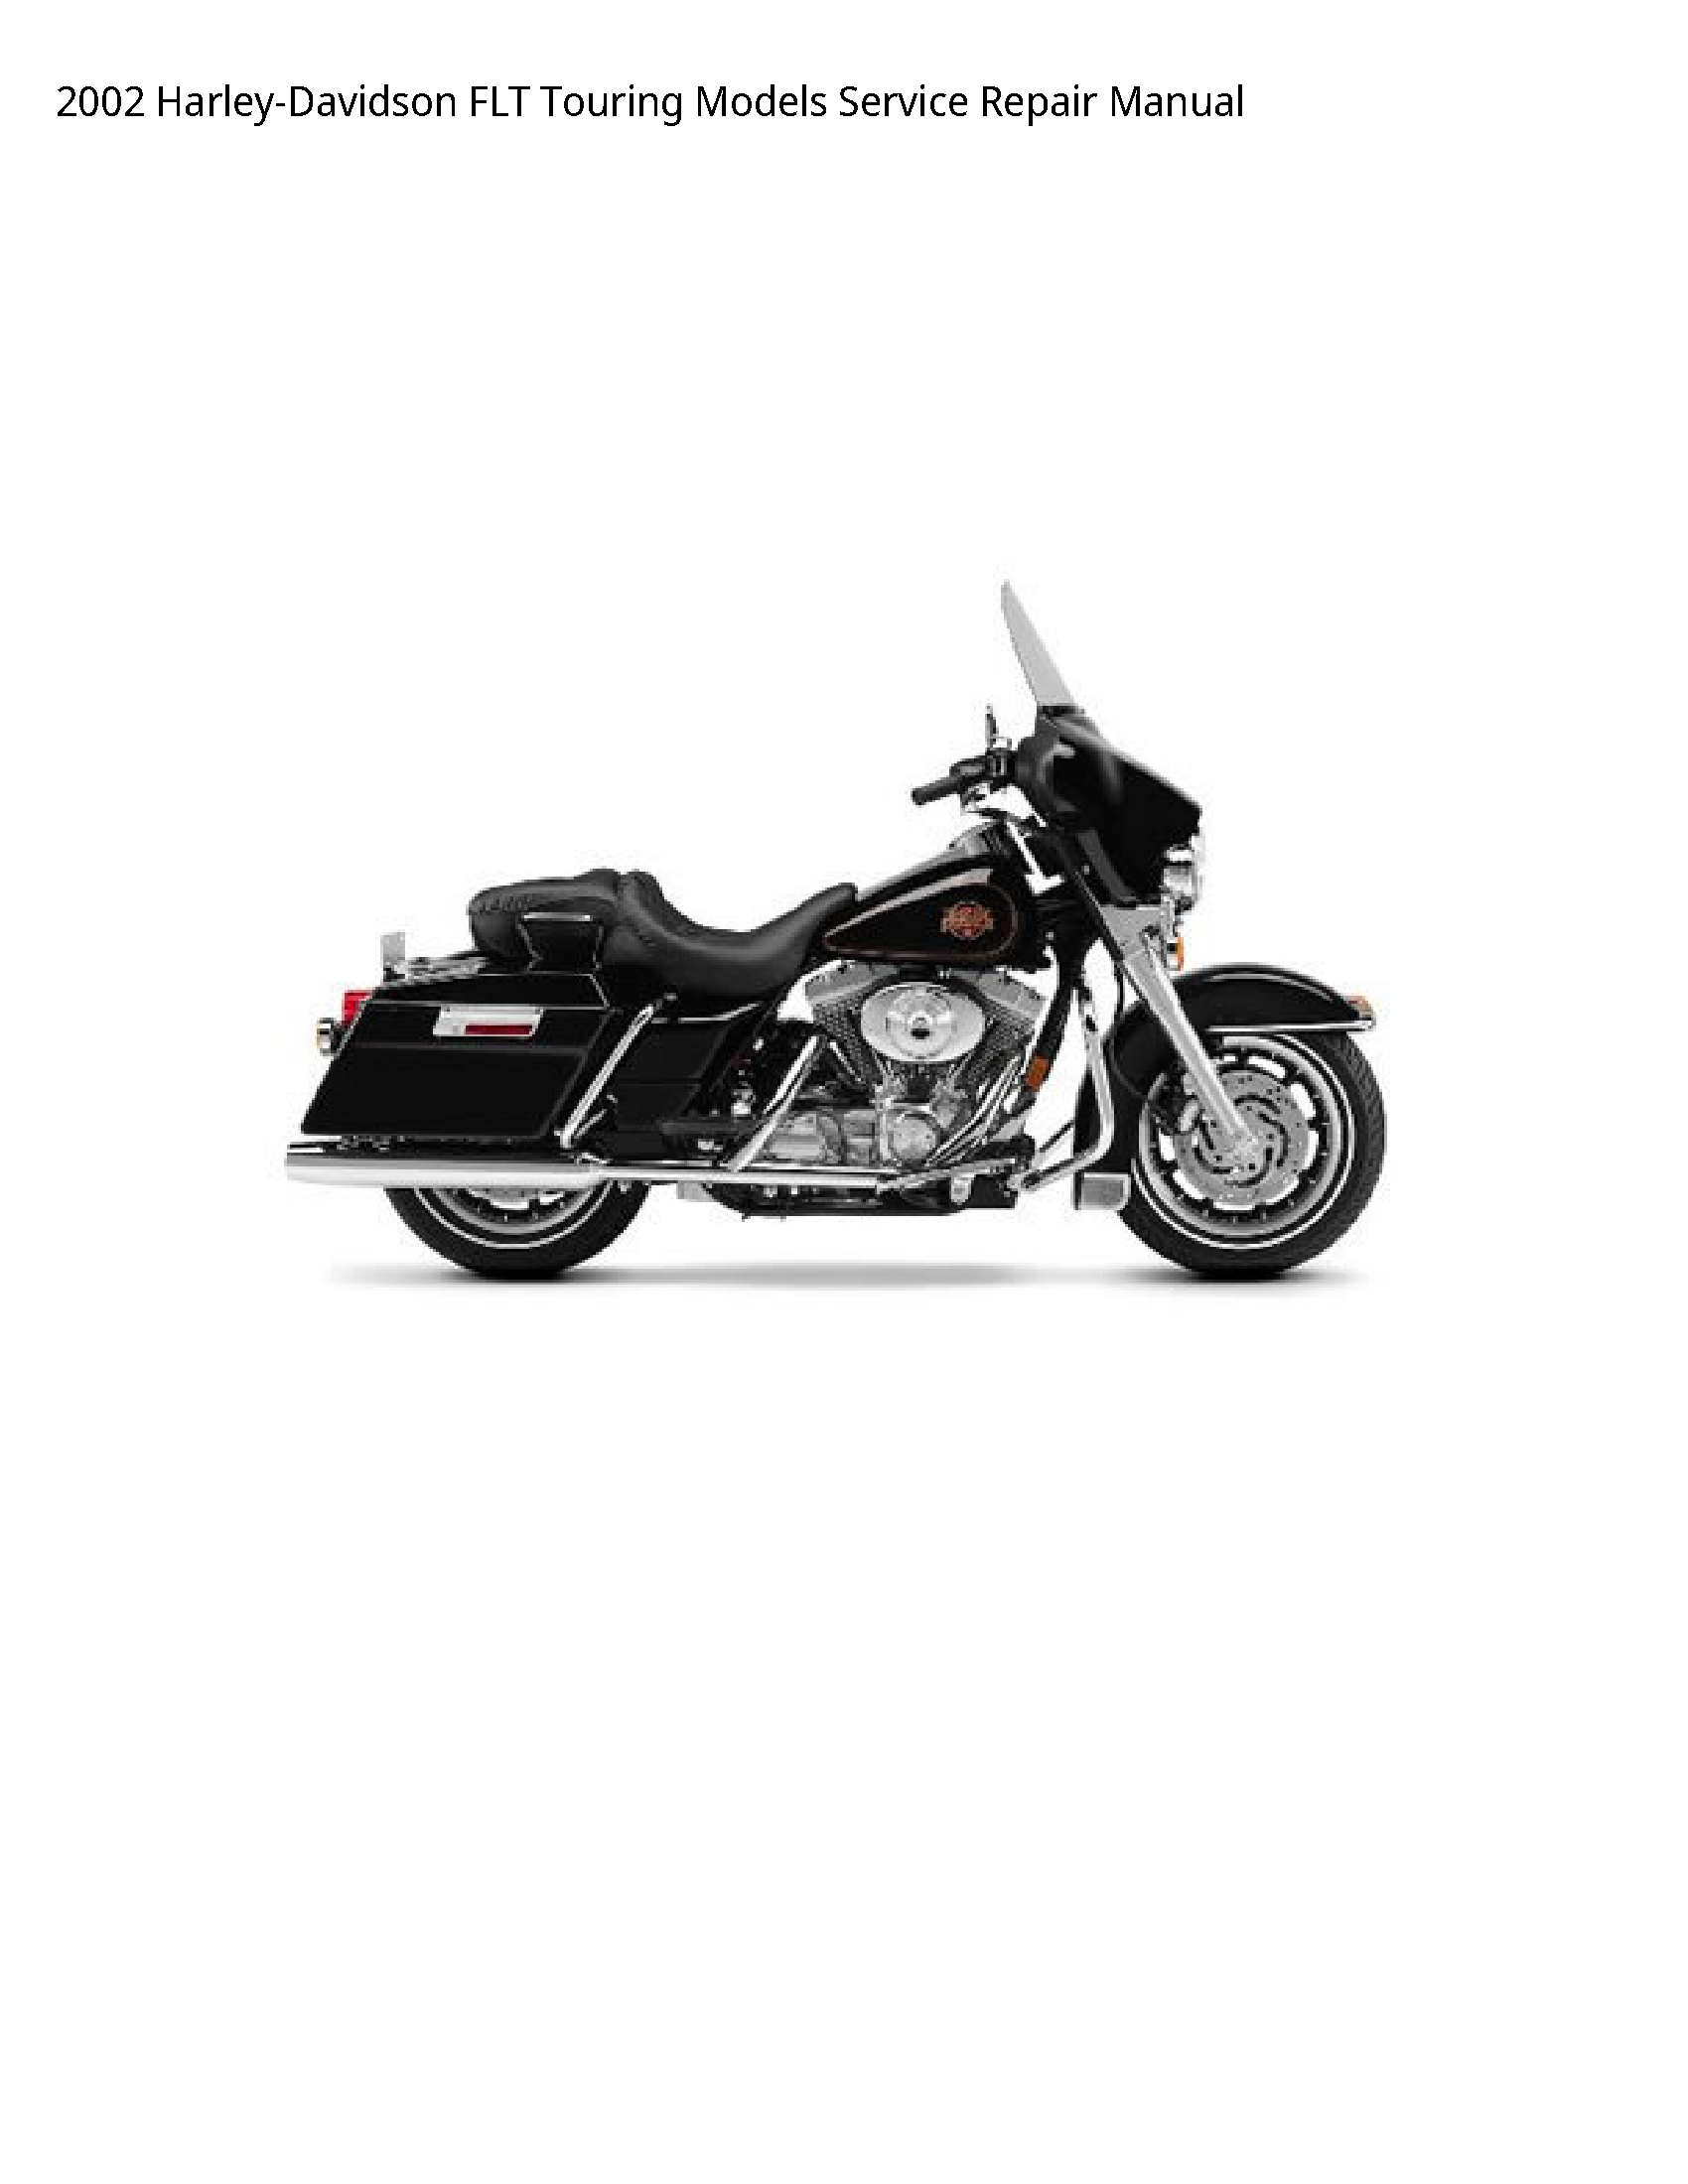 Harley Davidson FLT Touring manual